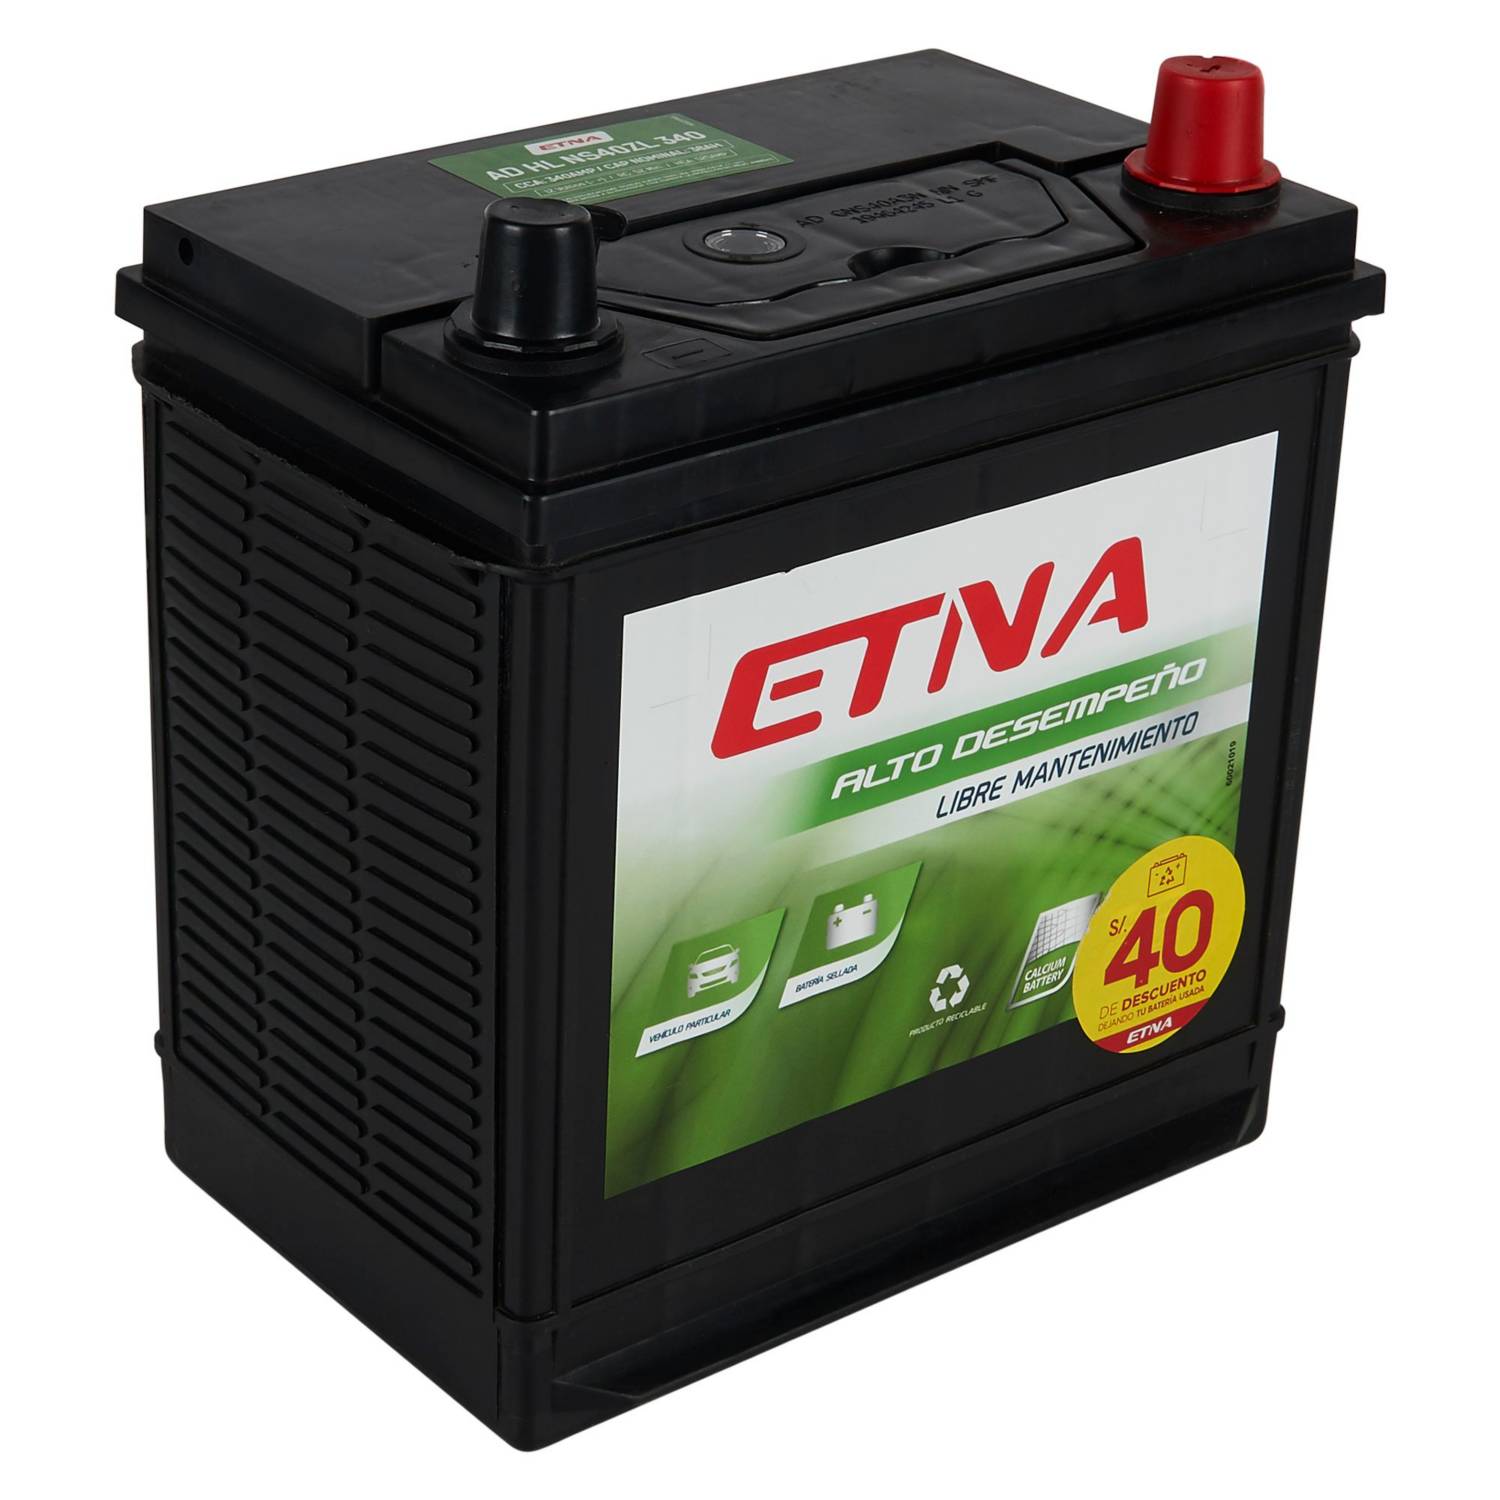 Batería para Carros Etna L2B START STOP - Todo Baterías Perú, Instalación  de Baterías a domicilio